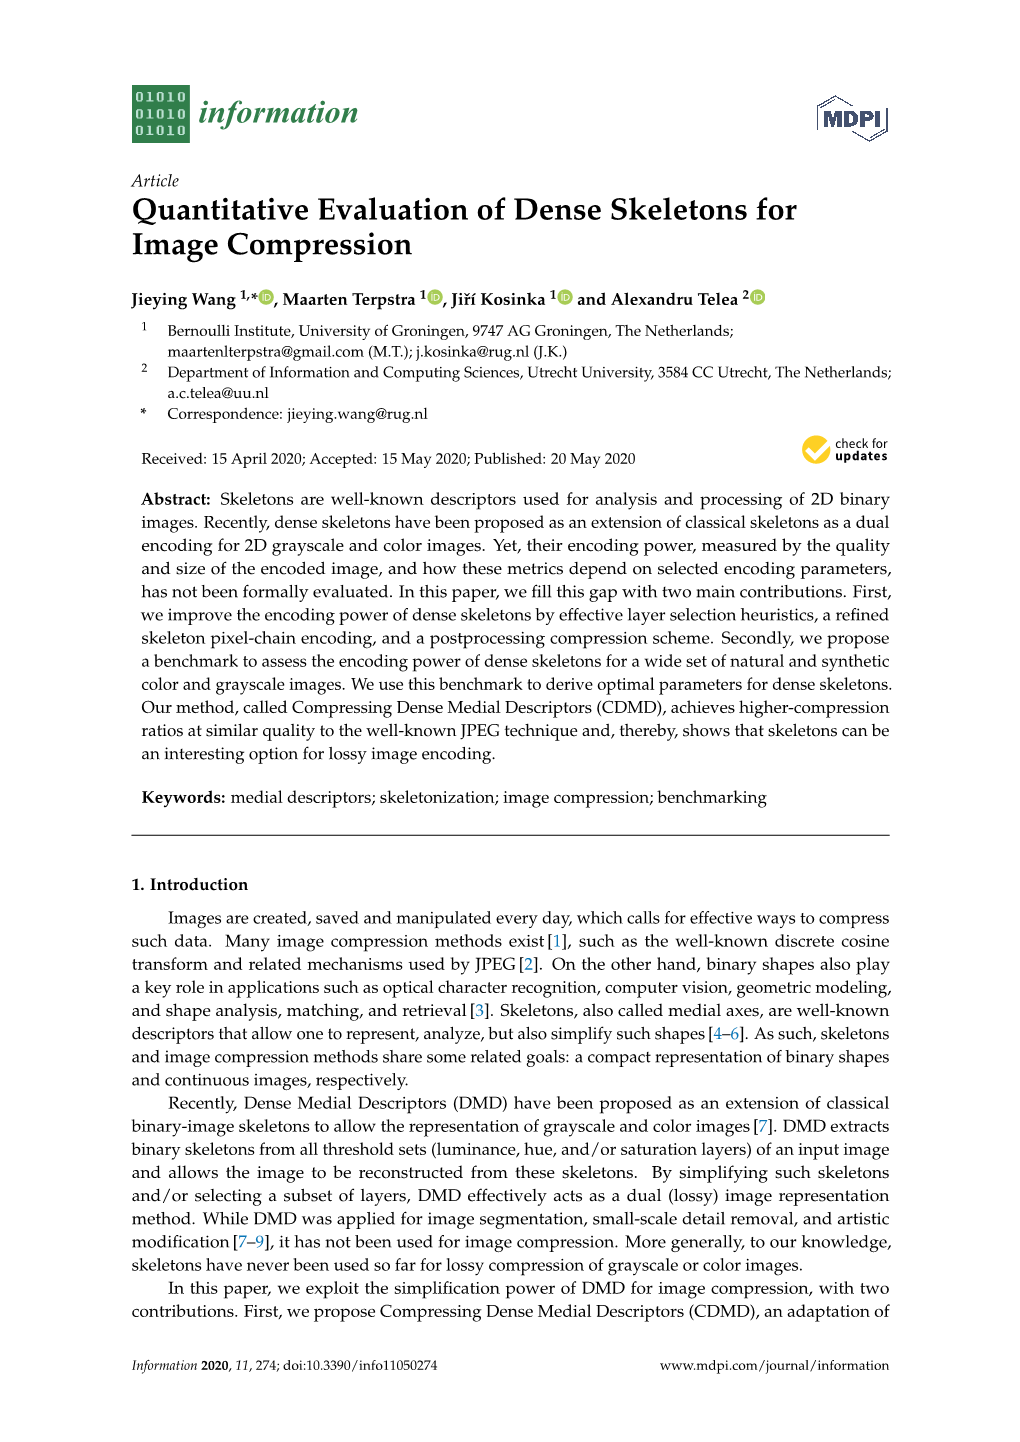 Quantitative Evaluation of Dense Skeletons for Image Compression